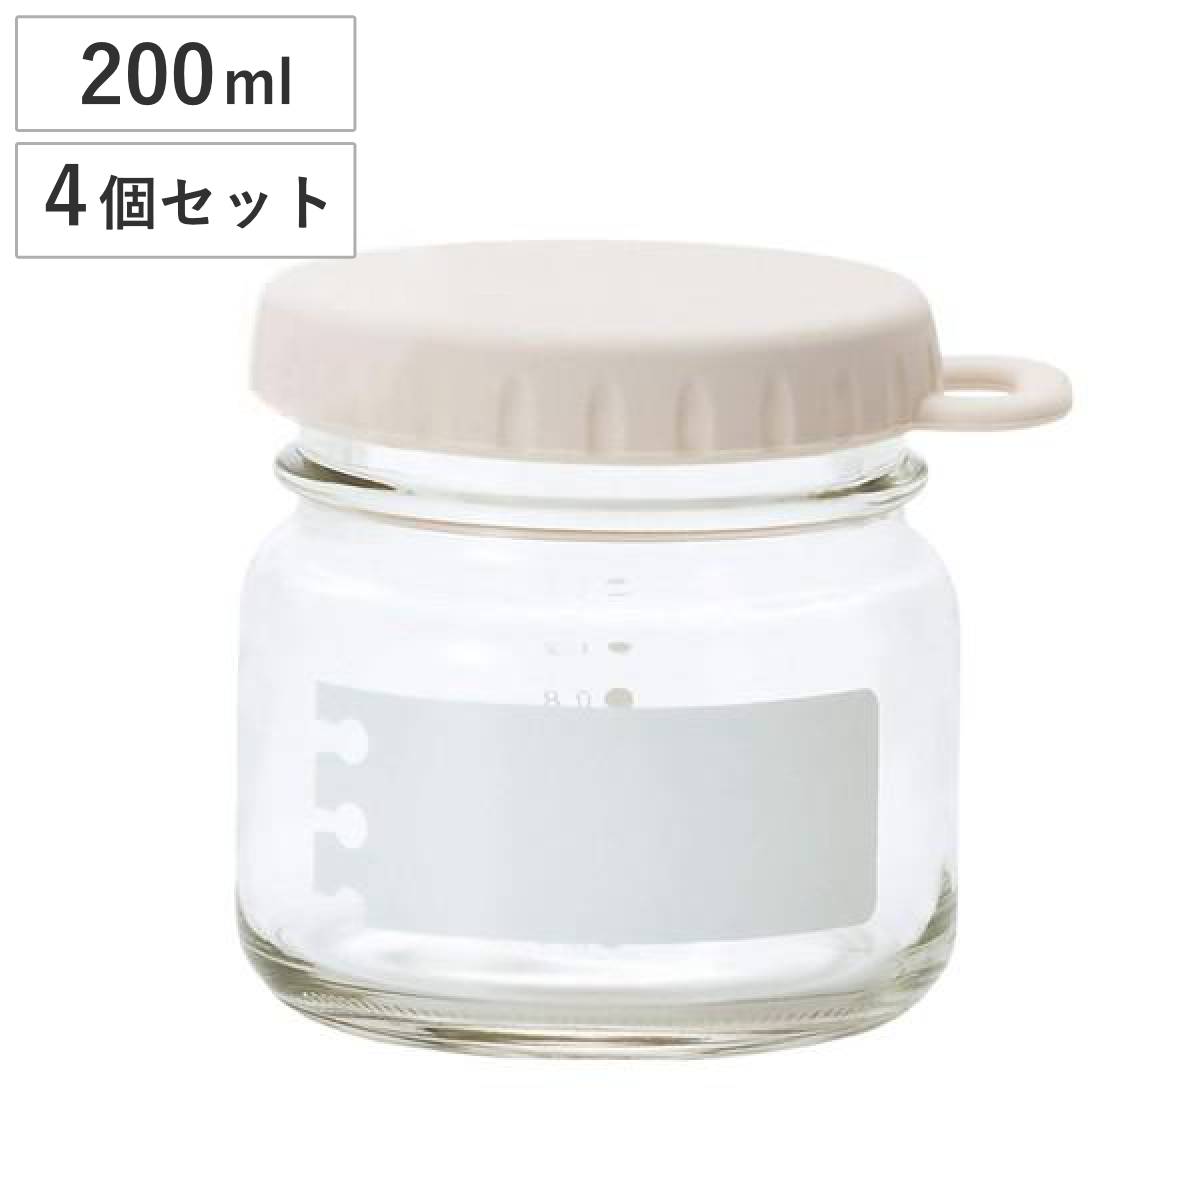 保存容器 e：Cap Jar 200 （GW） 200ml ガーリックホワイト ガラス製 4個セット （ 保存ビン ガラス保存容器 保存瓶 保存びん ガラス製保